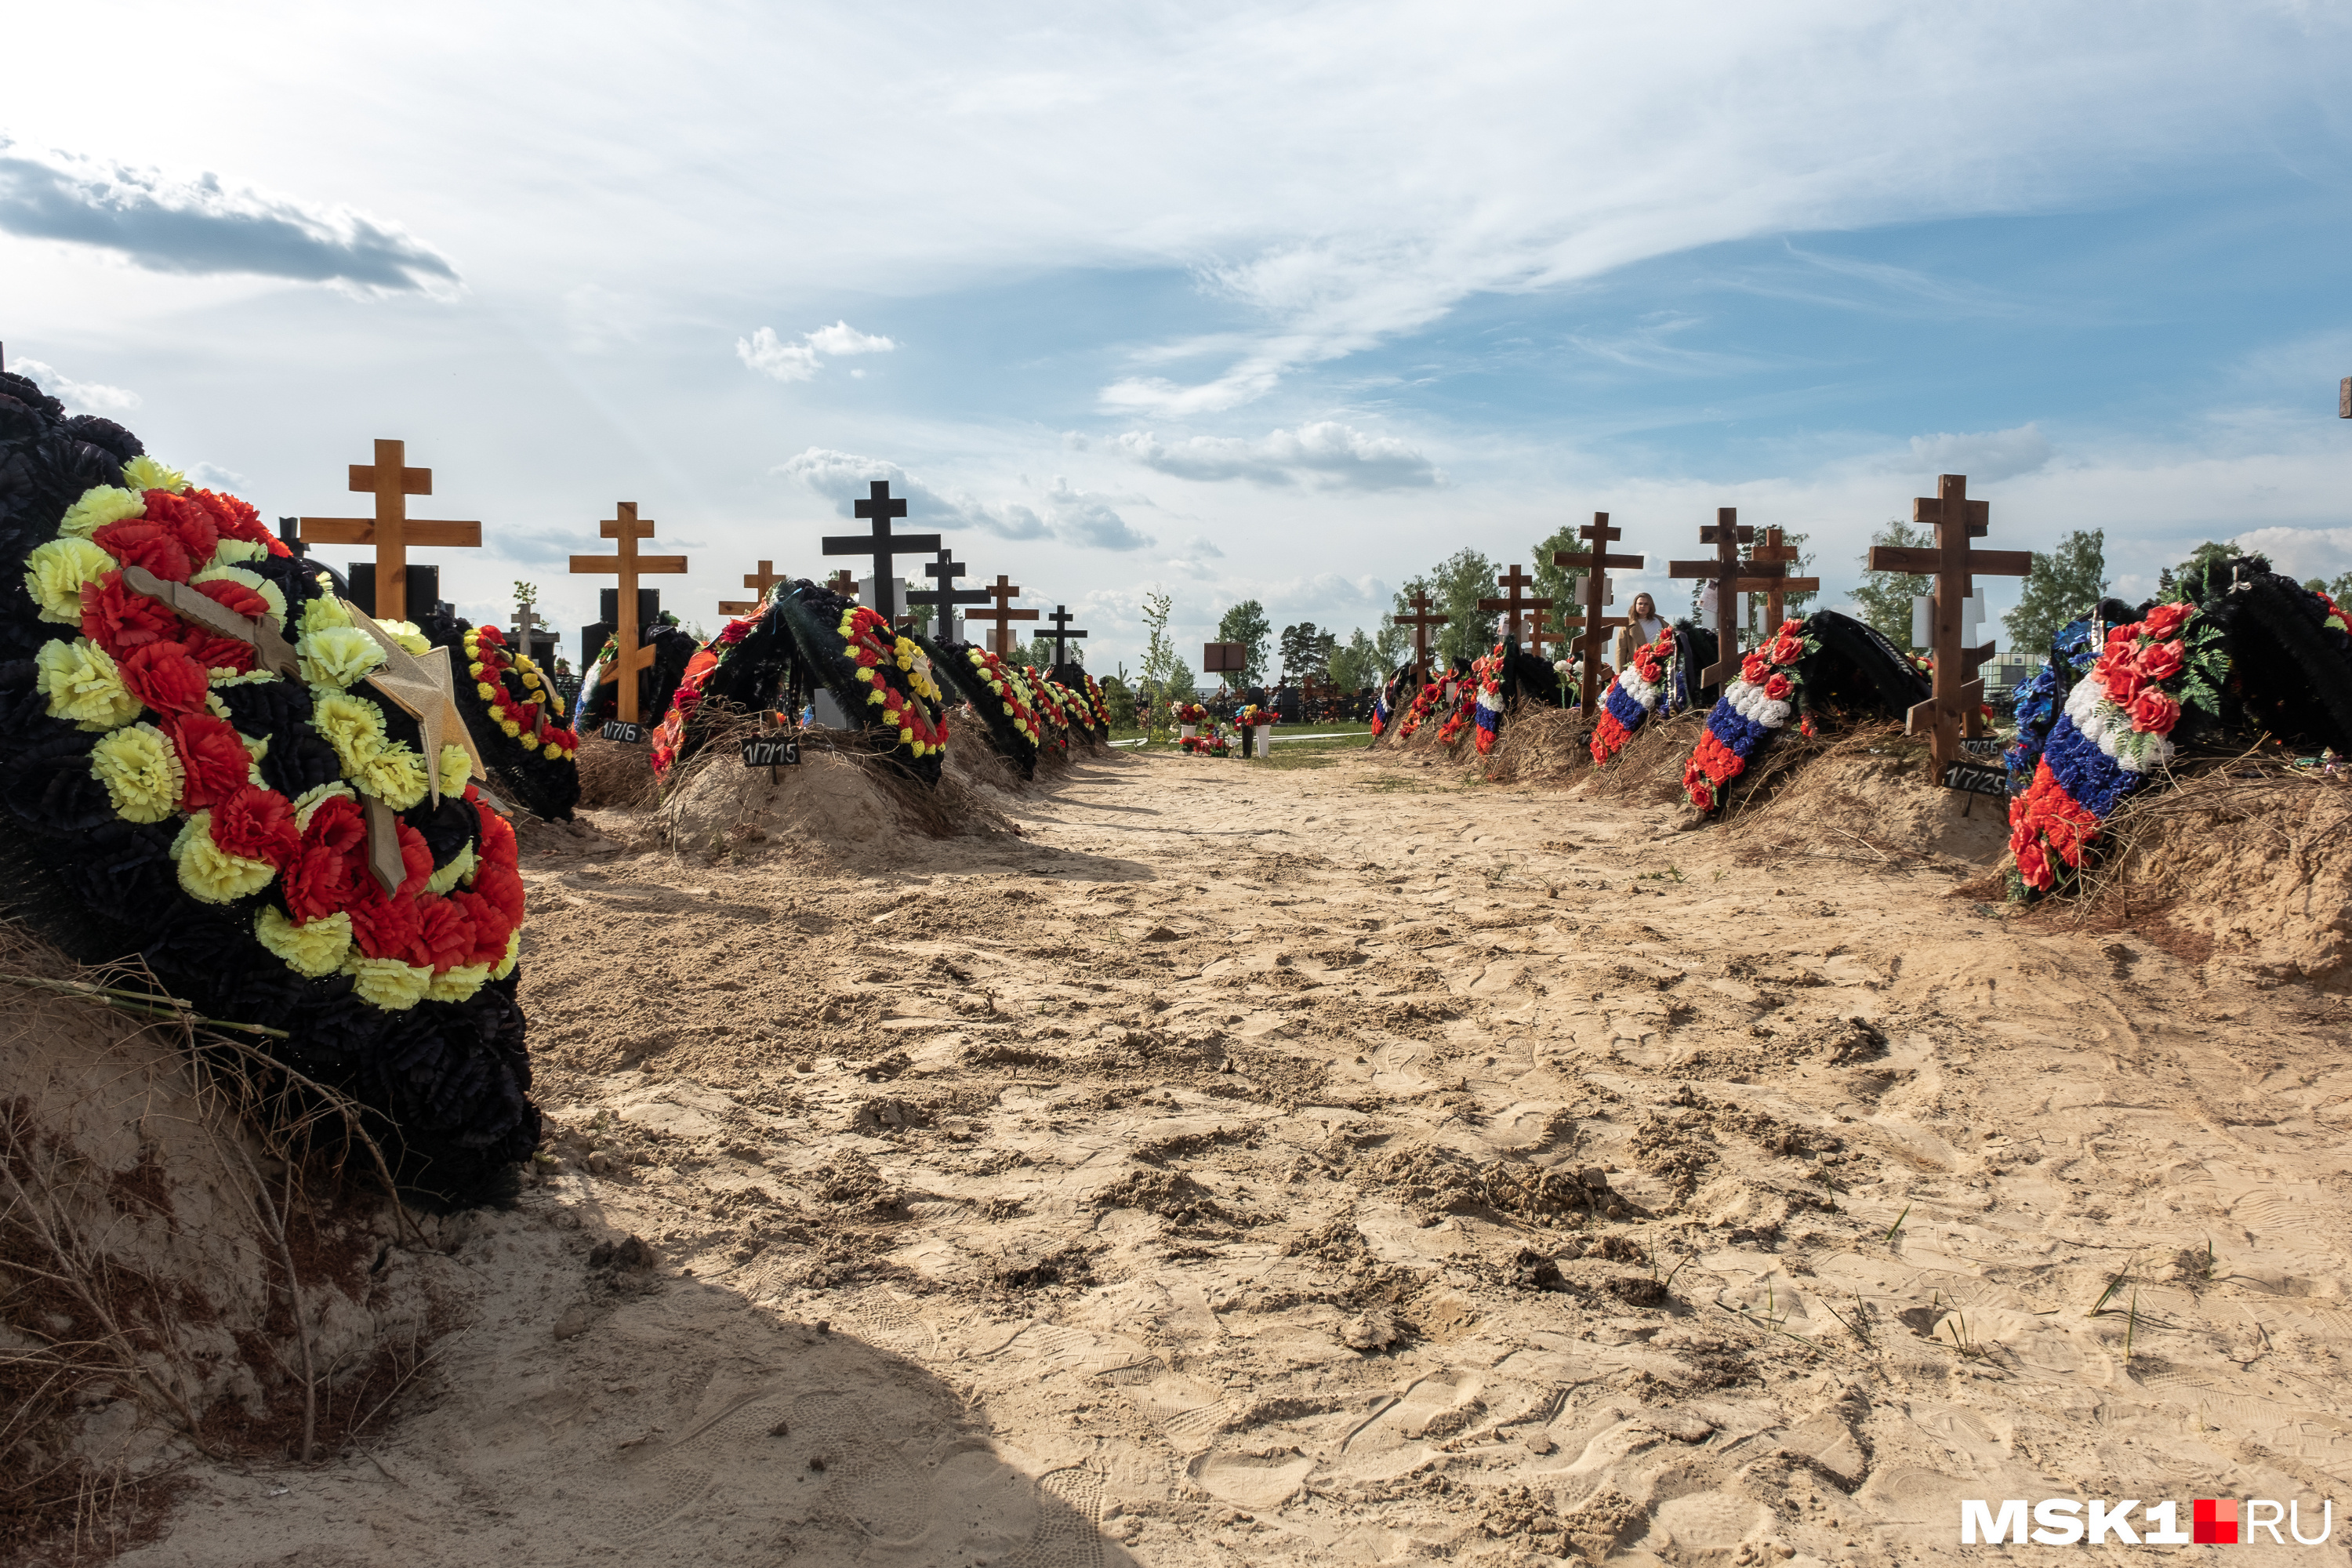 Одну из могил погибшего бойца выкопали родственники, чтобы забрать гроб с телом на родину